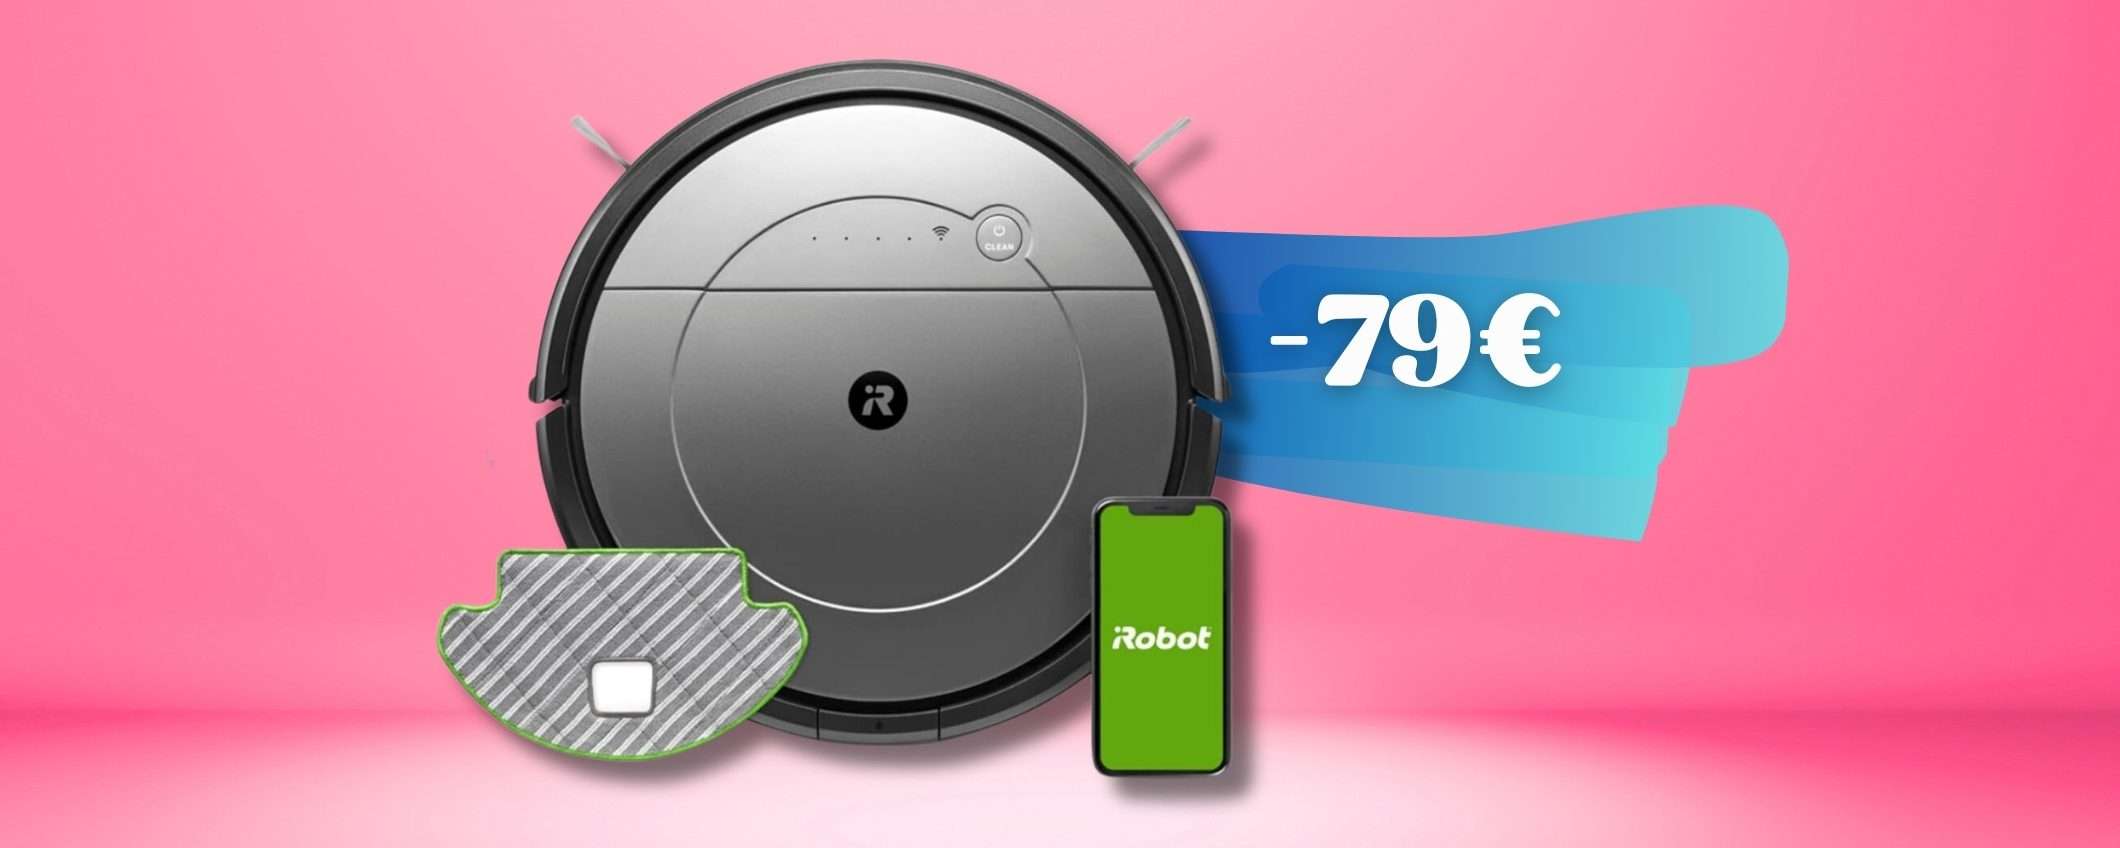 iRobot Roomba Combo per una pulizia PROFONDA senza stress (-79%)